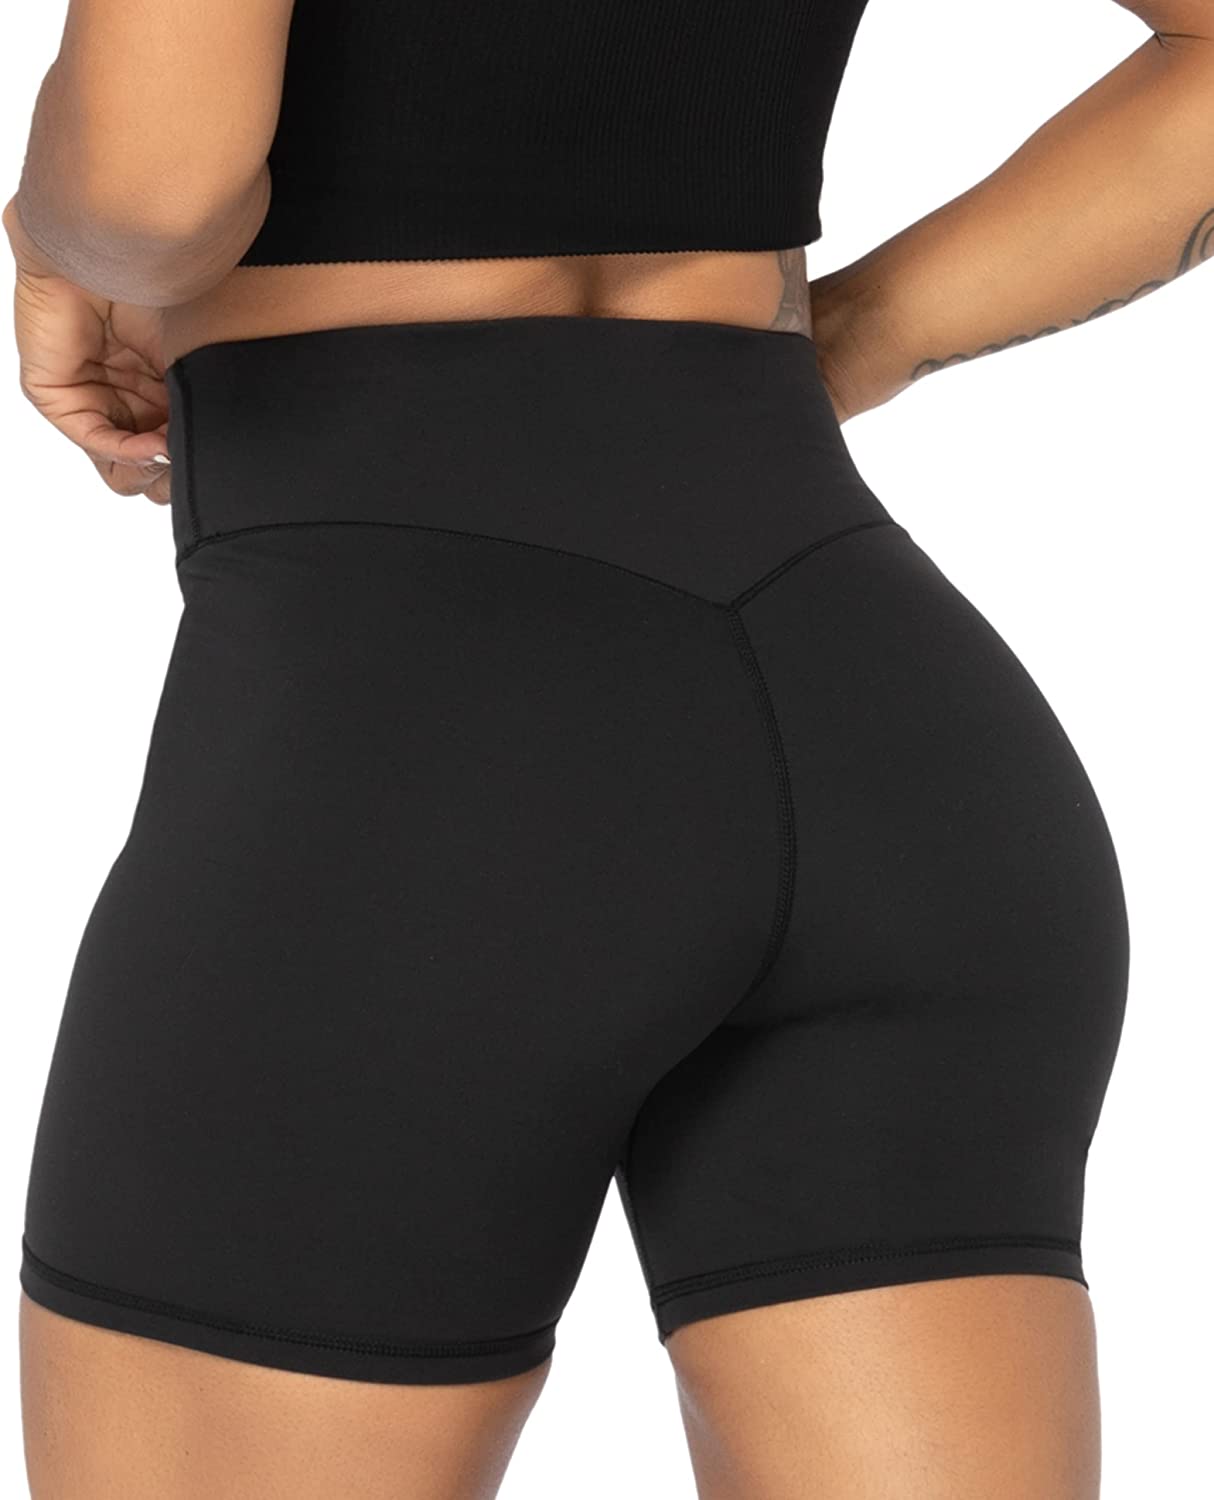 OVESPORT Workout Shorts for Women Scrunch Butt Lifting High